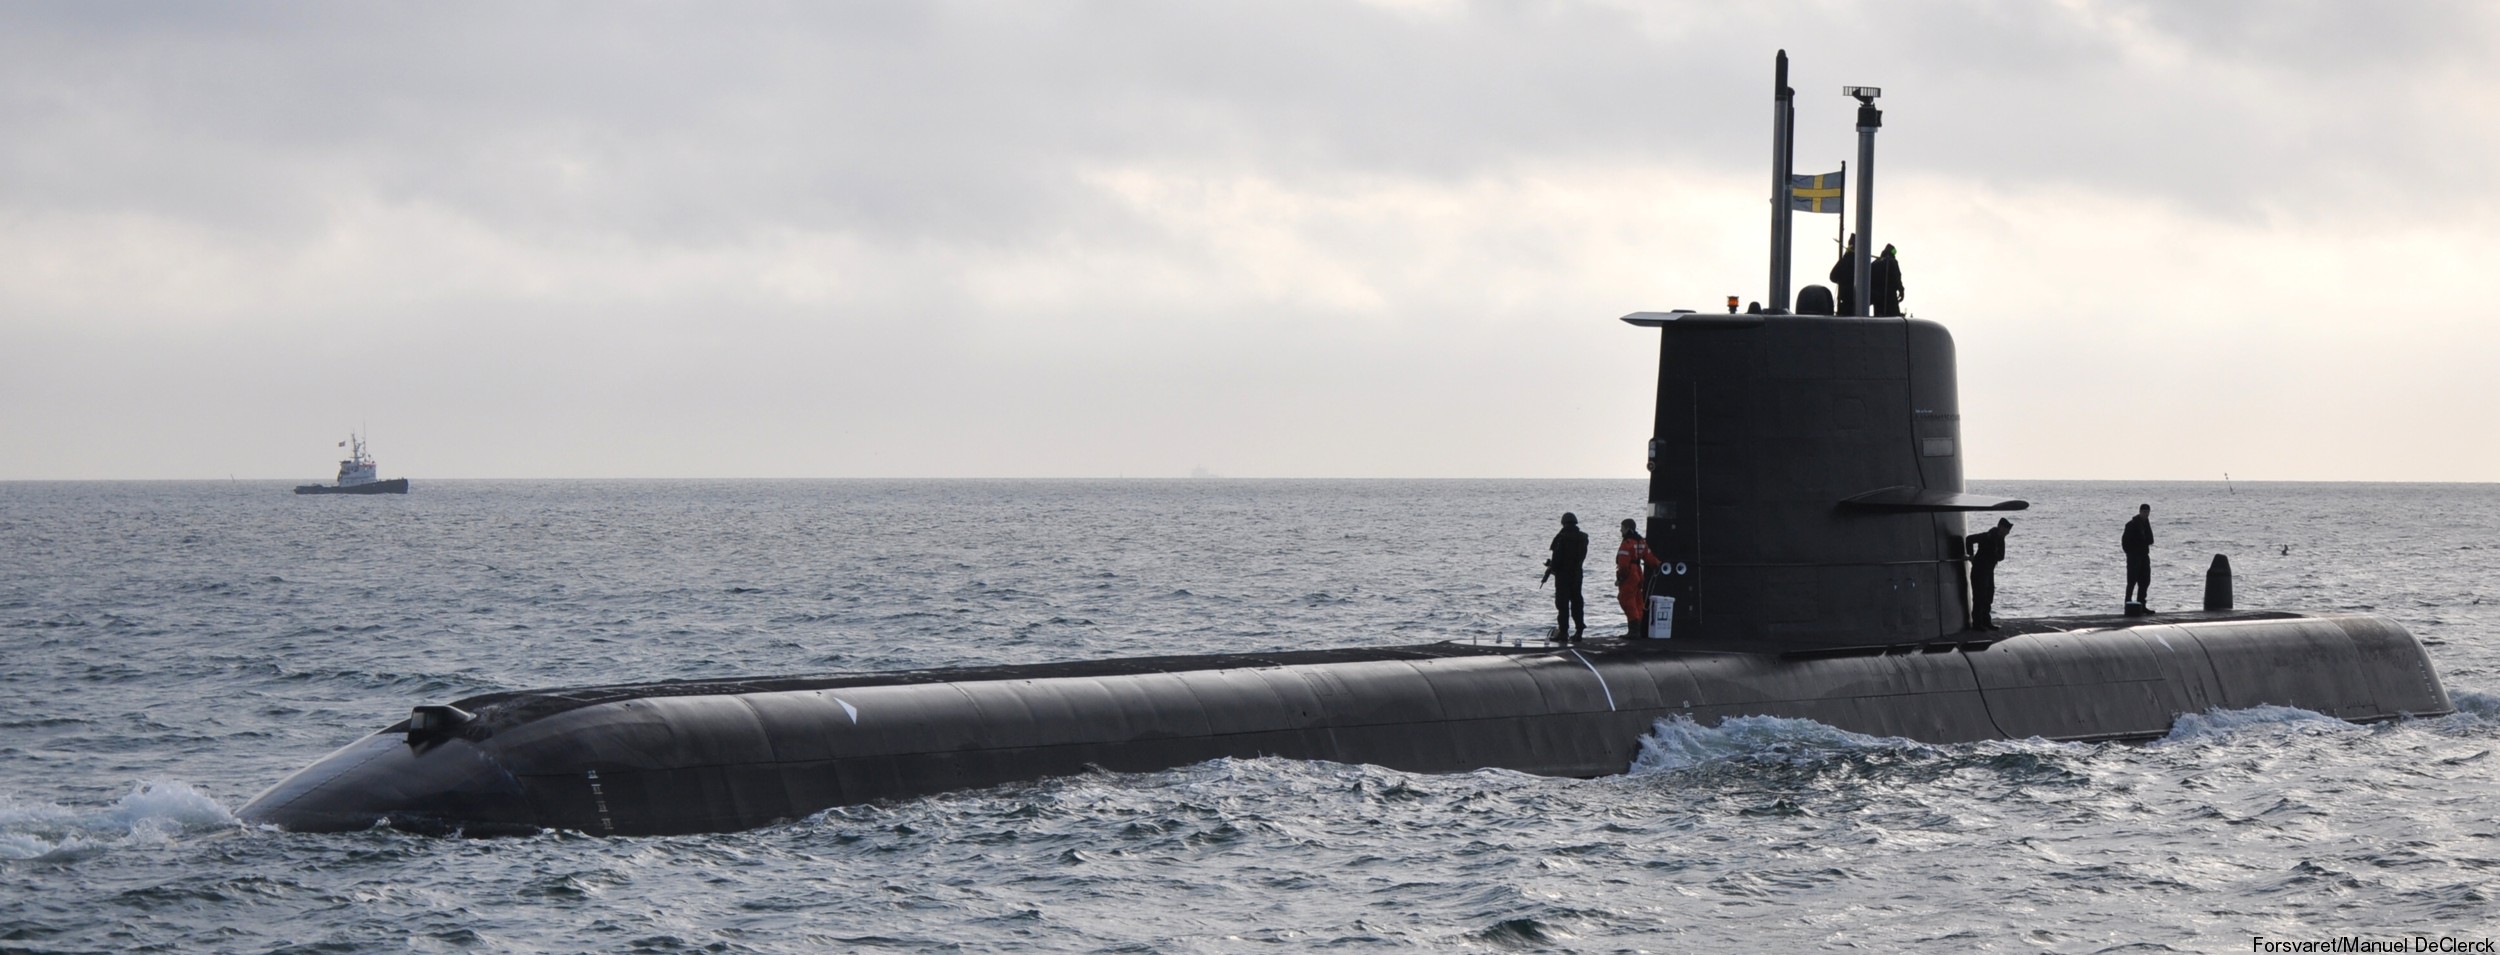 hswms hms gotland gtd class submarine ssk swedish navy svenska marinen försvarsmakten kockums 27